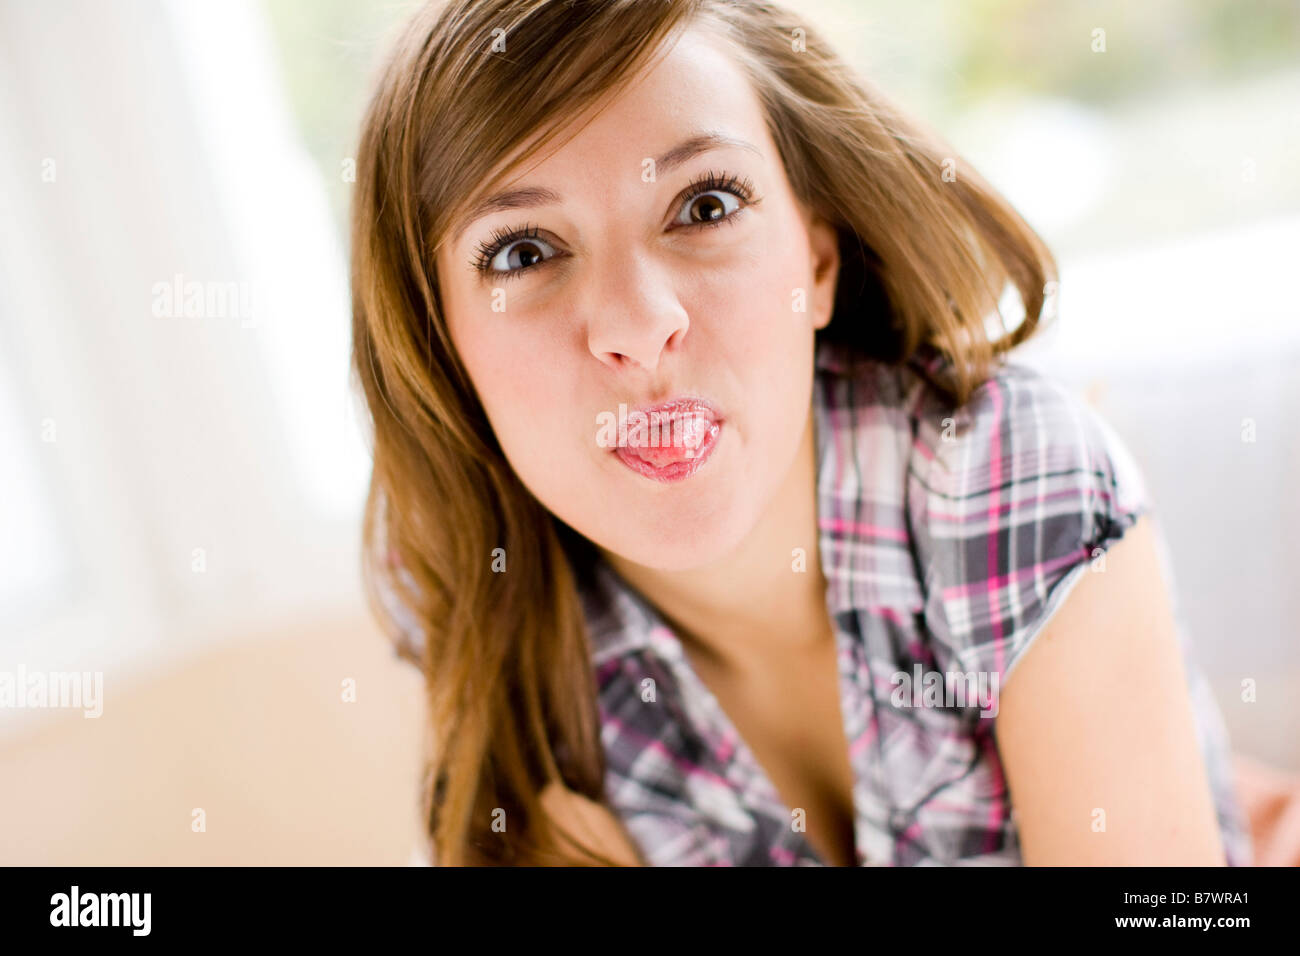 Teenager Mädchen Zunge Heraus Stockfotografie Alamy 